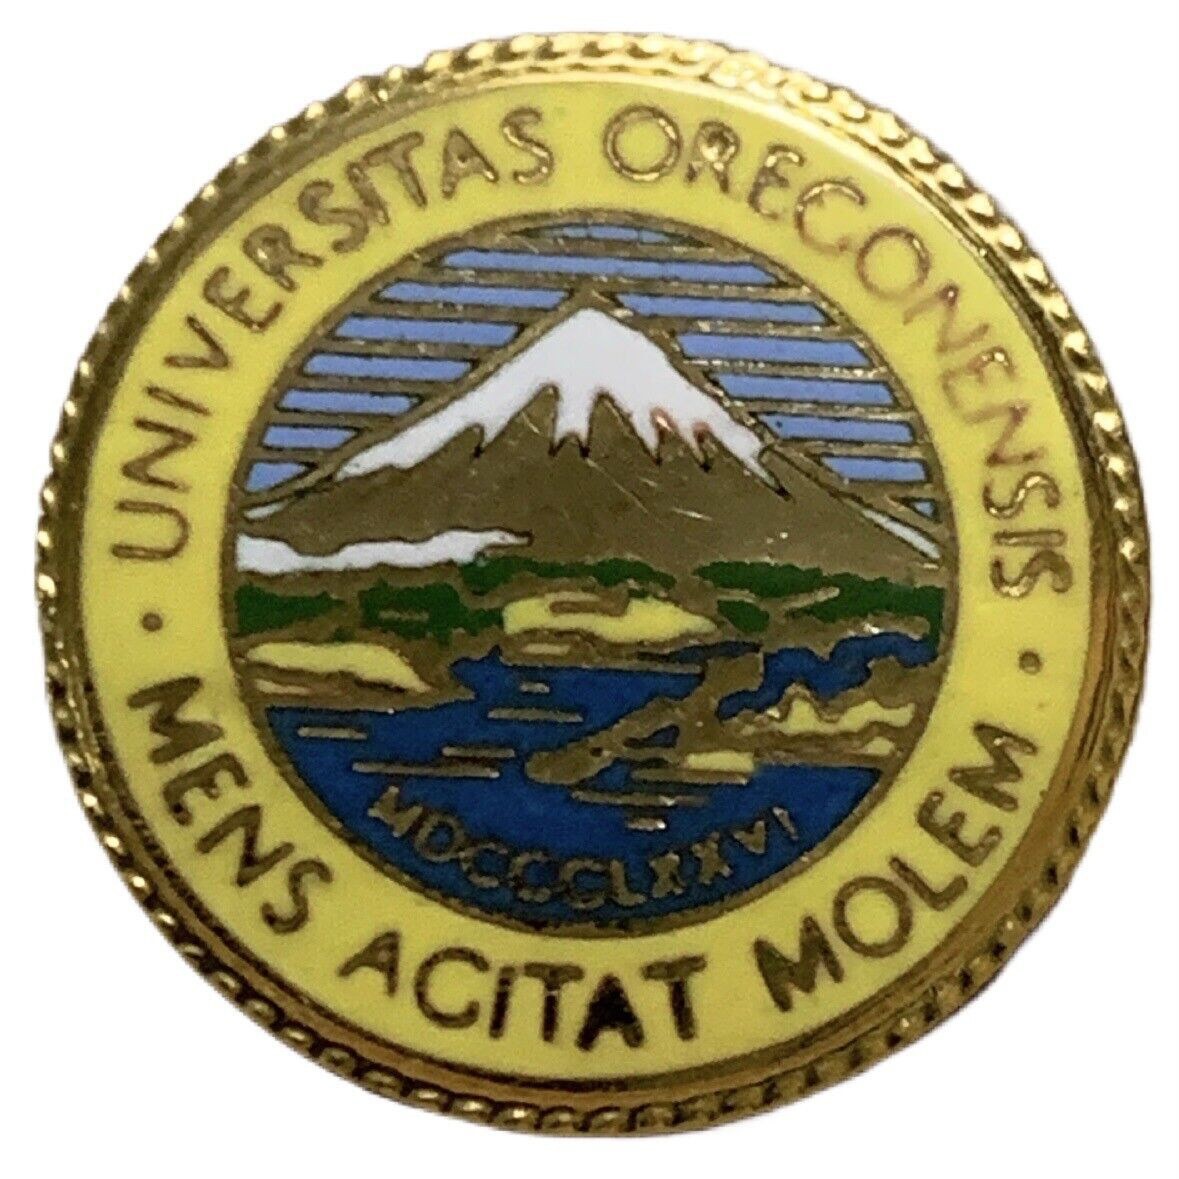 Vintage University of Oregon Seal Souvenir Pin